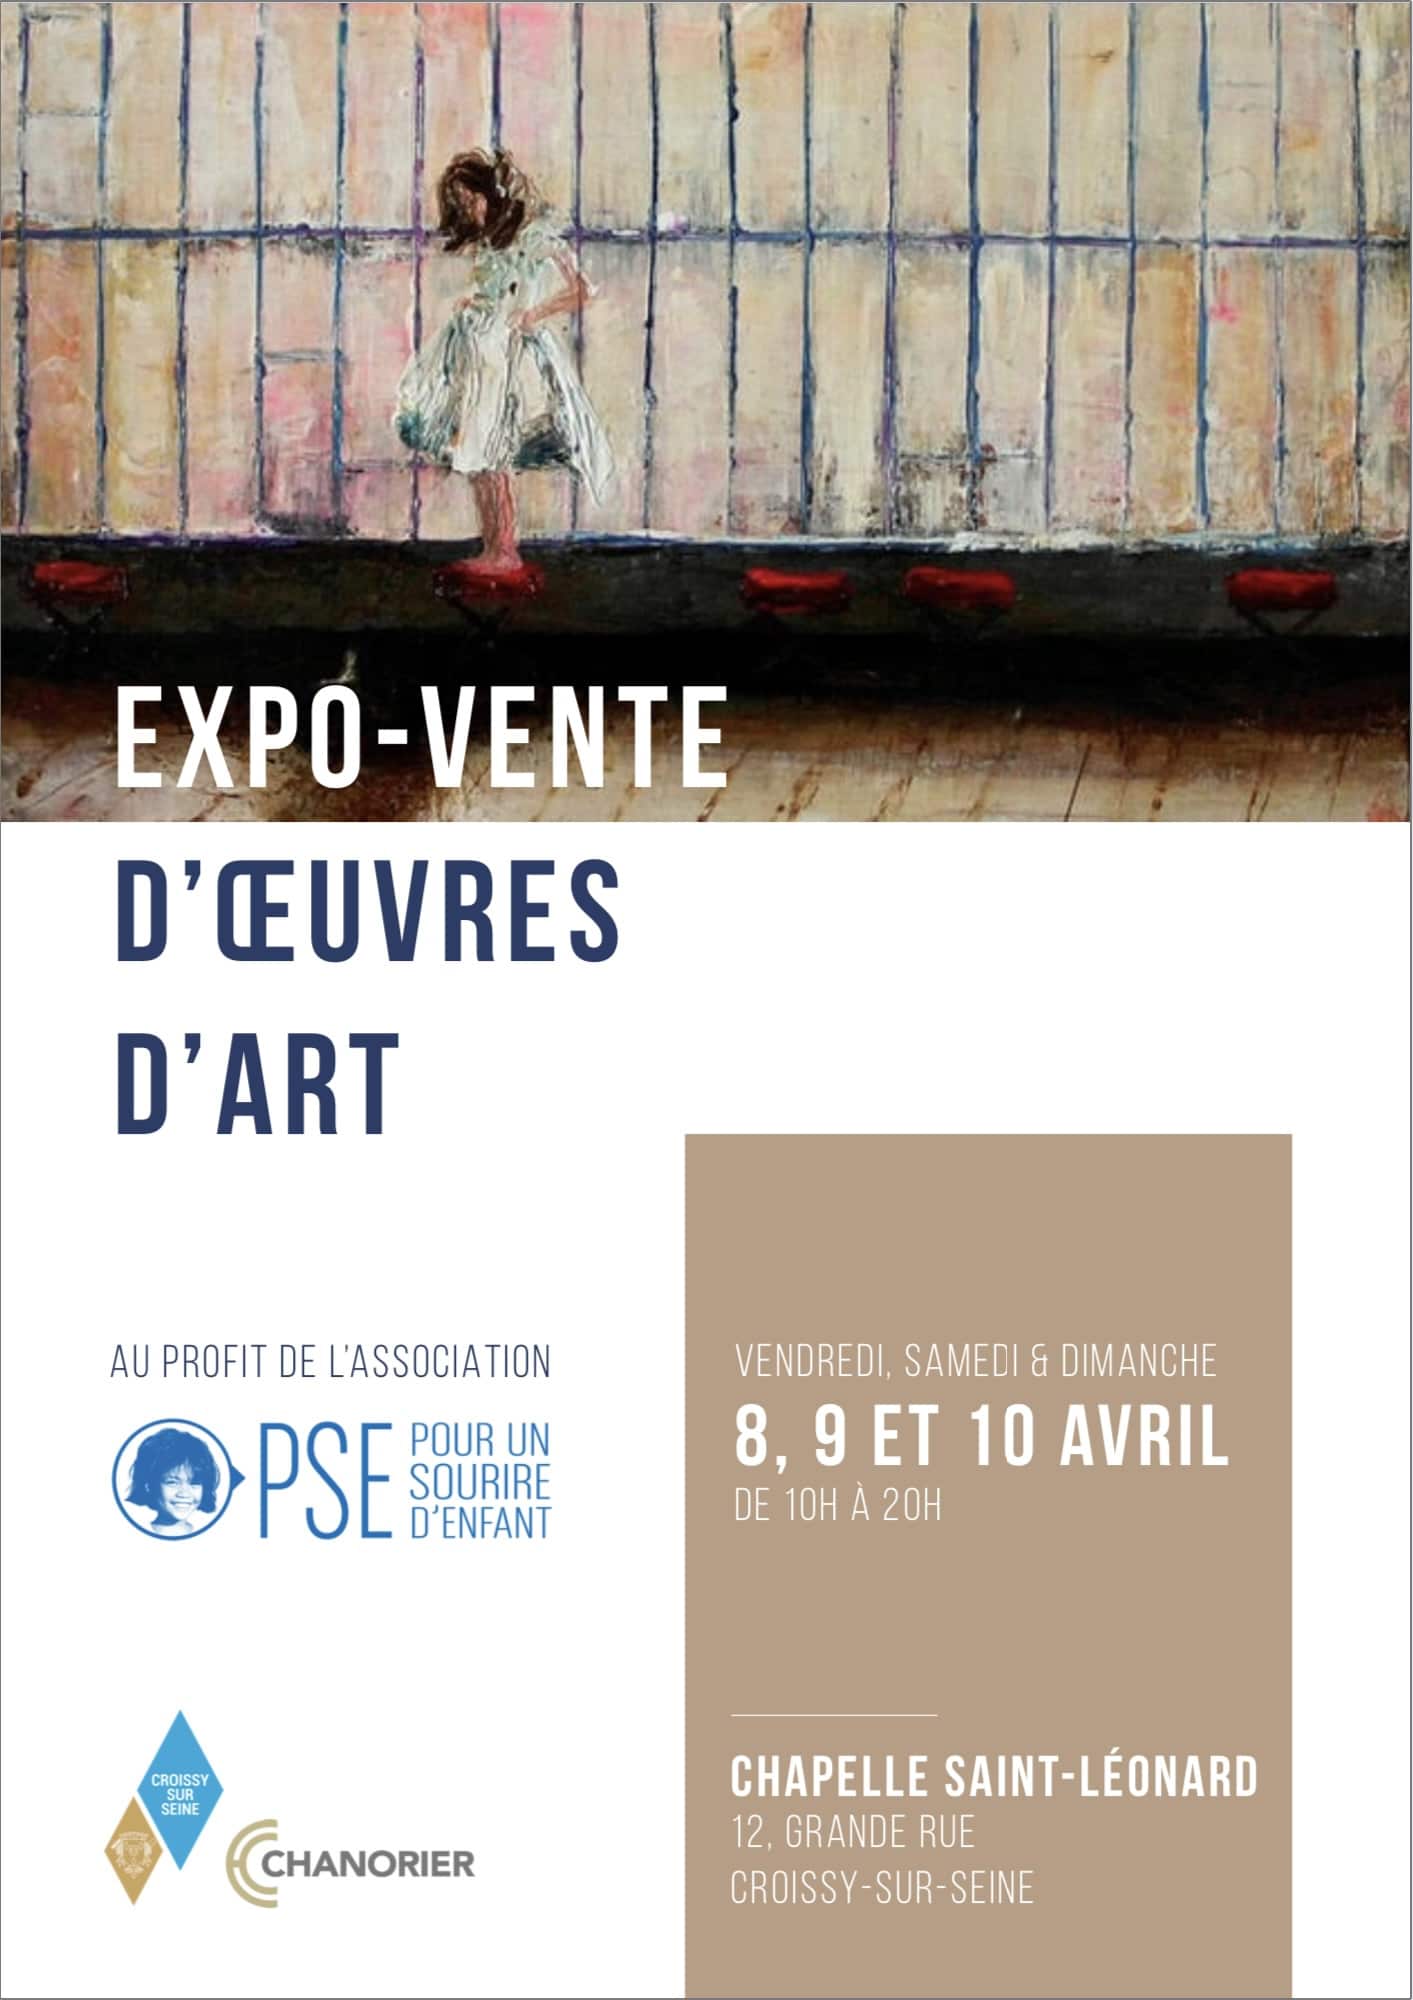 Expo Vente Oeuvres d art Croissy sur Seine Paris Ouest